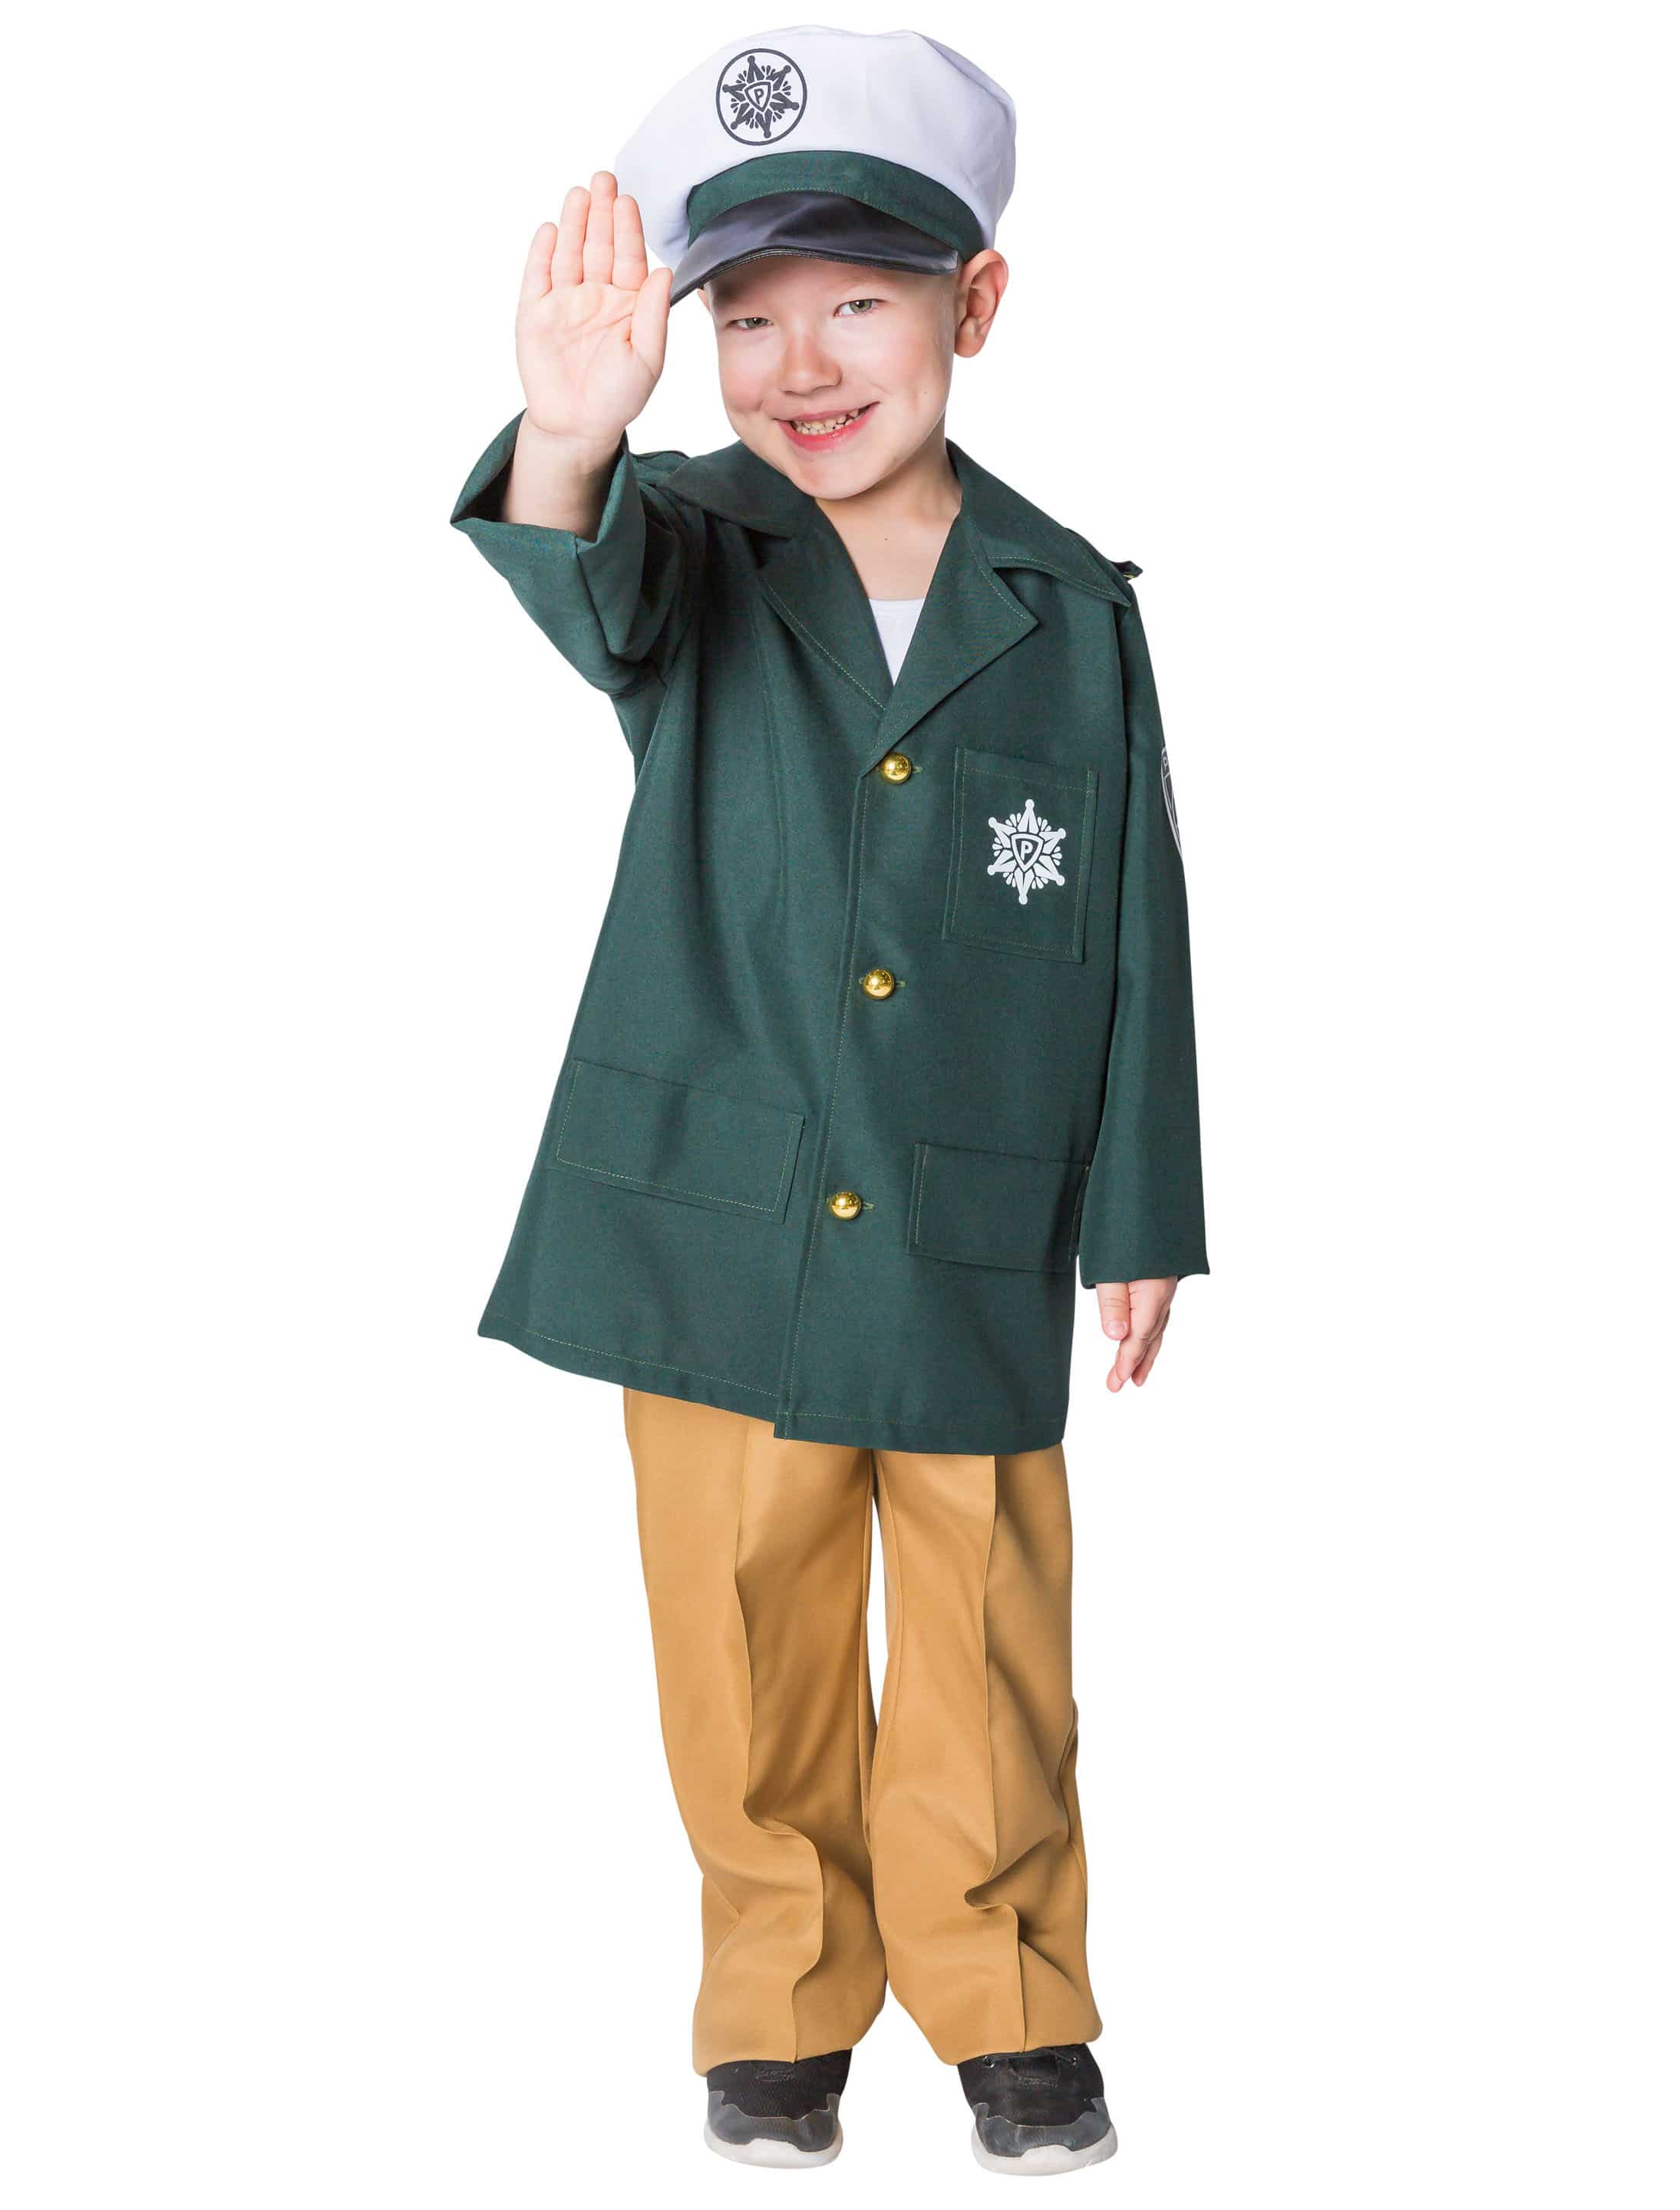 Polizist Kinder 3-tlg. grün 128